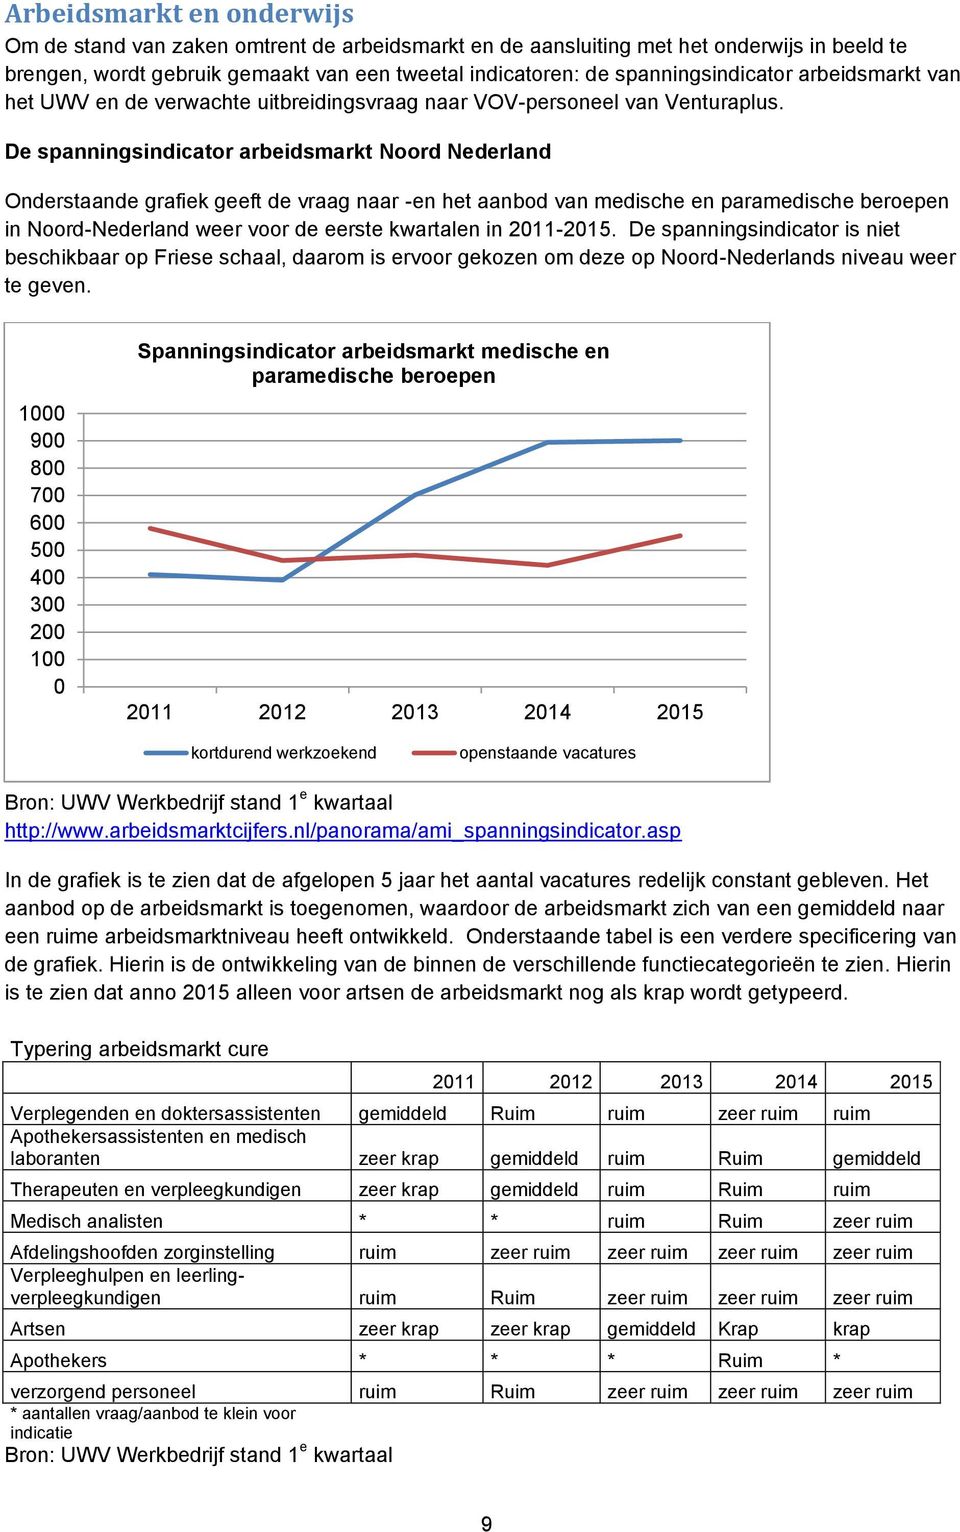 De spanningsindicator arbeidsmarkt Noord Nederland Onderstaande grafiek geeft de vraag naar -en het aanbod van medische en paramedische beroepen in Noord-Nederland weer voor de eerste kwartalen in